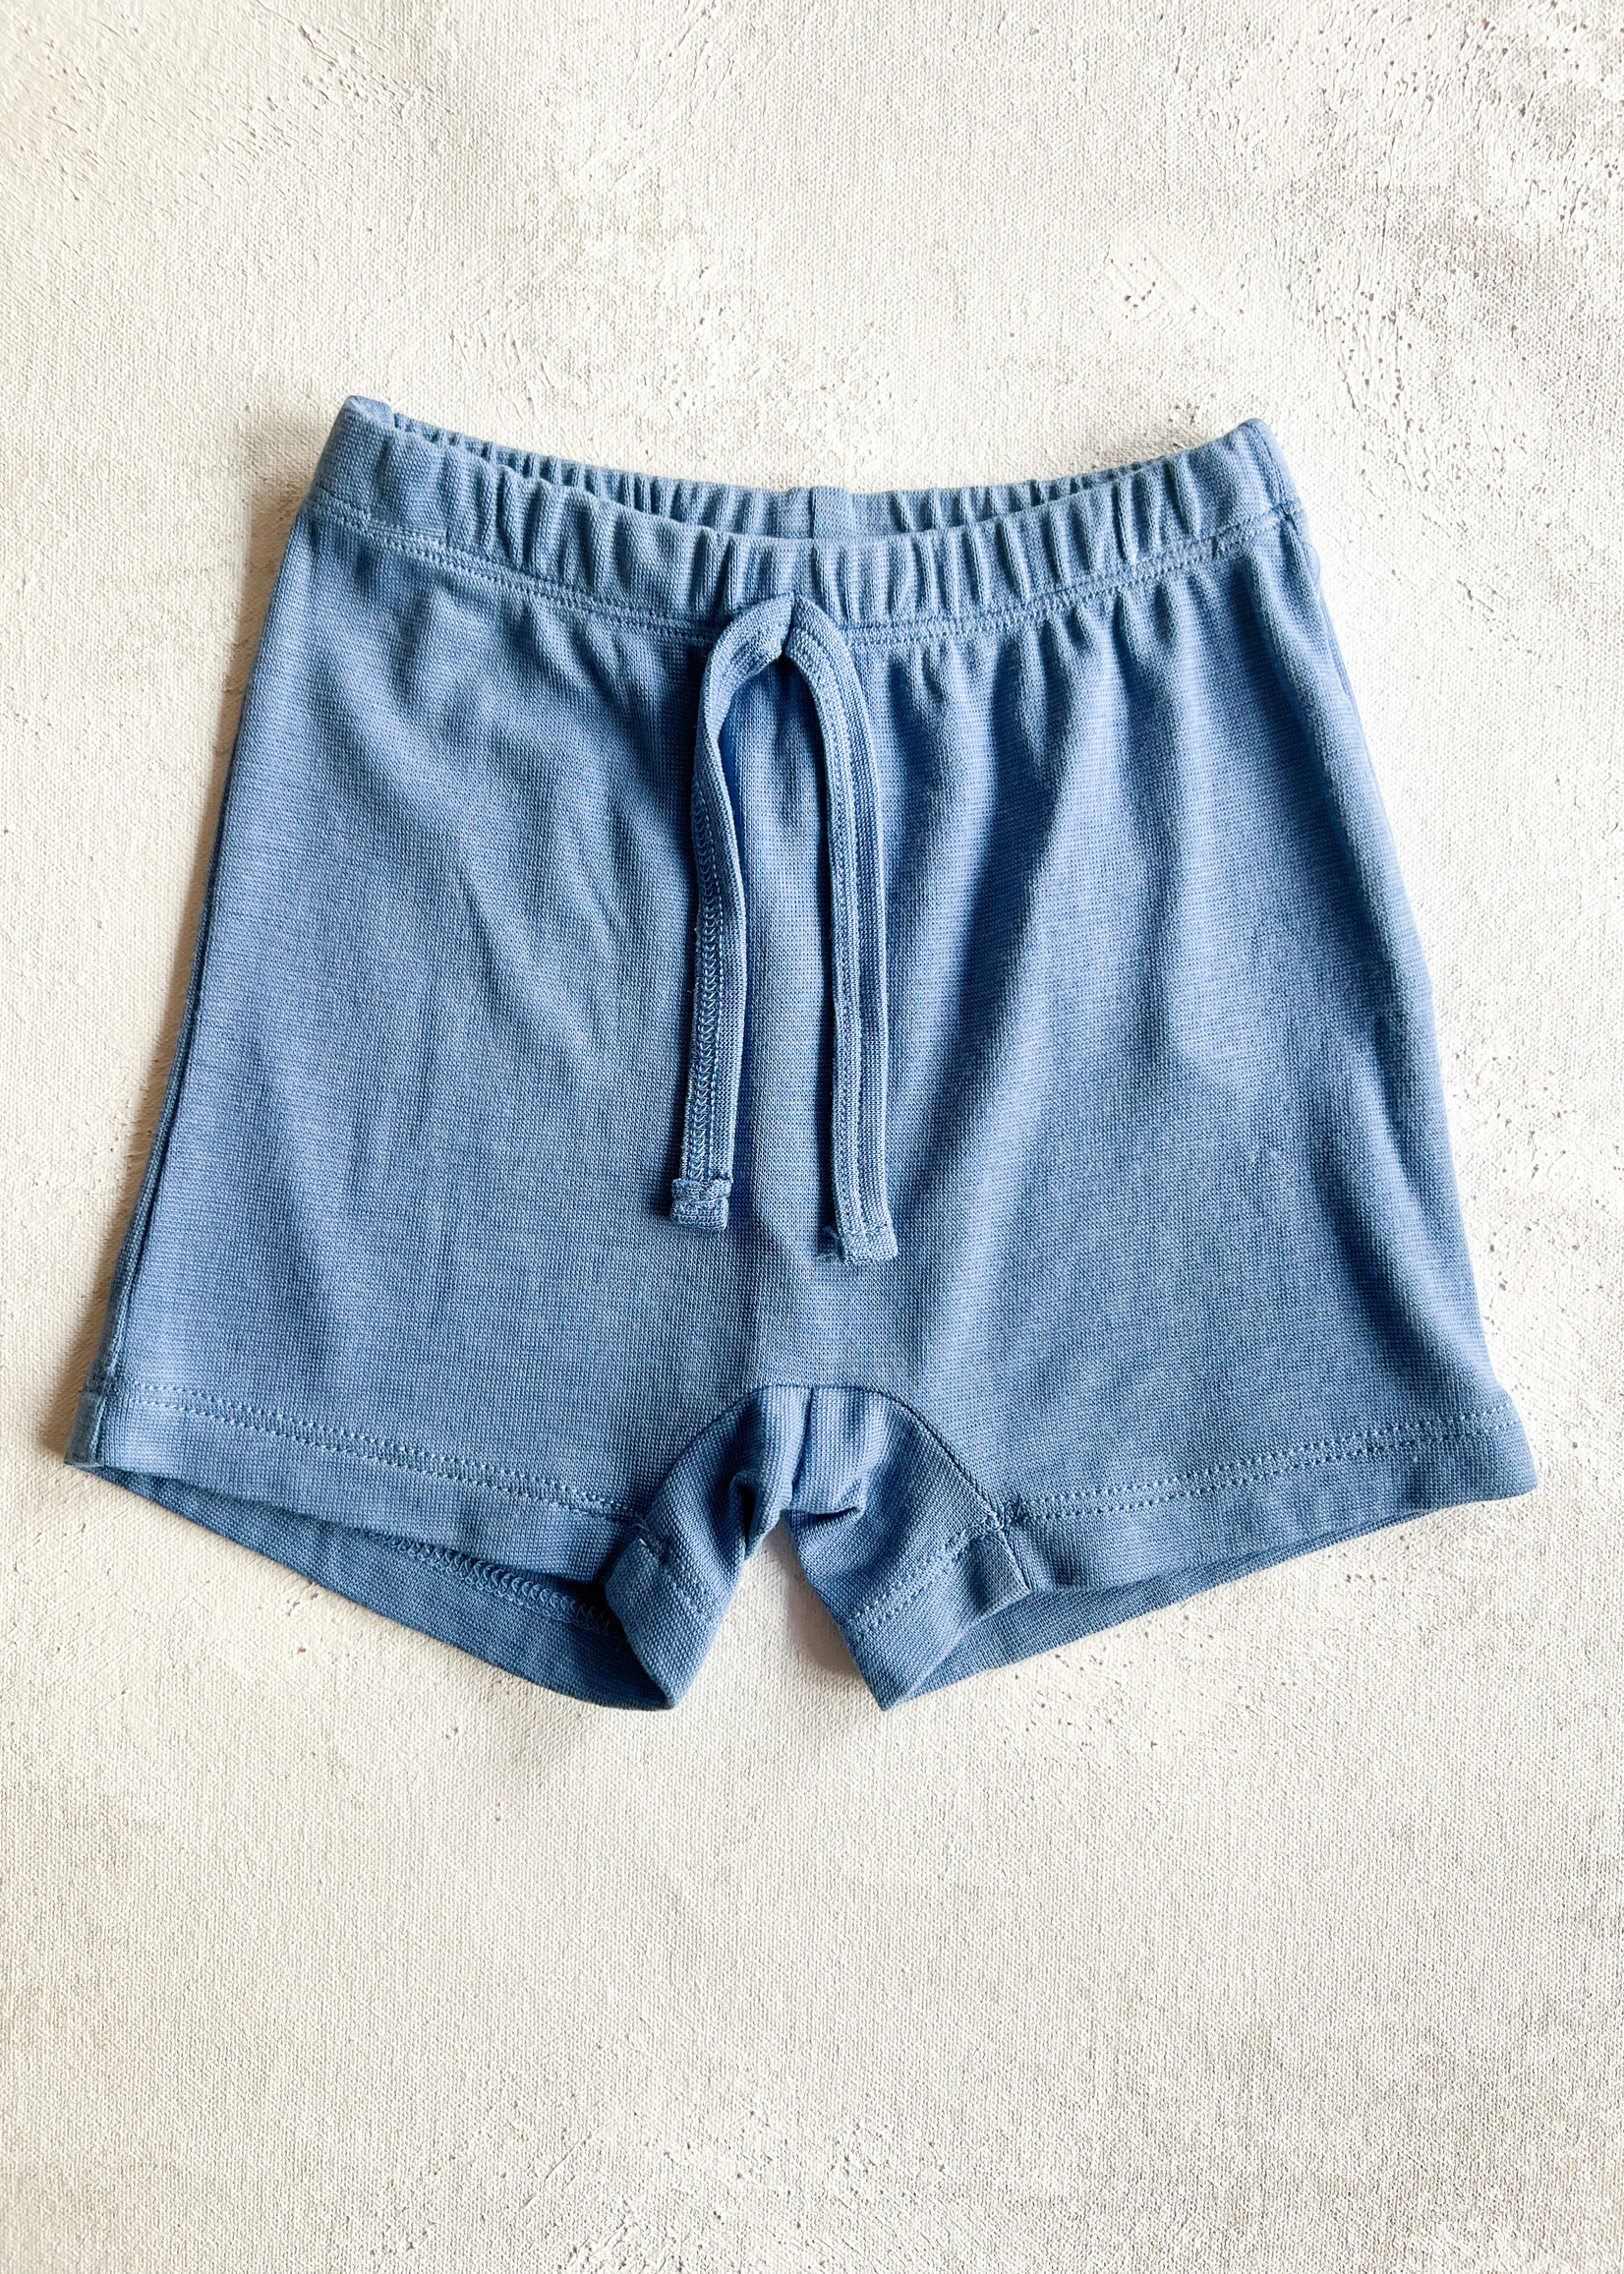 Elitaire Petite Sky Blue Shorts